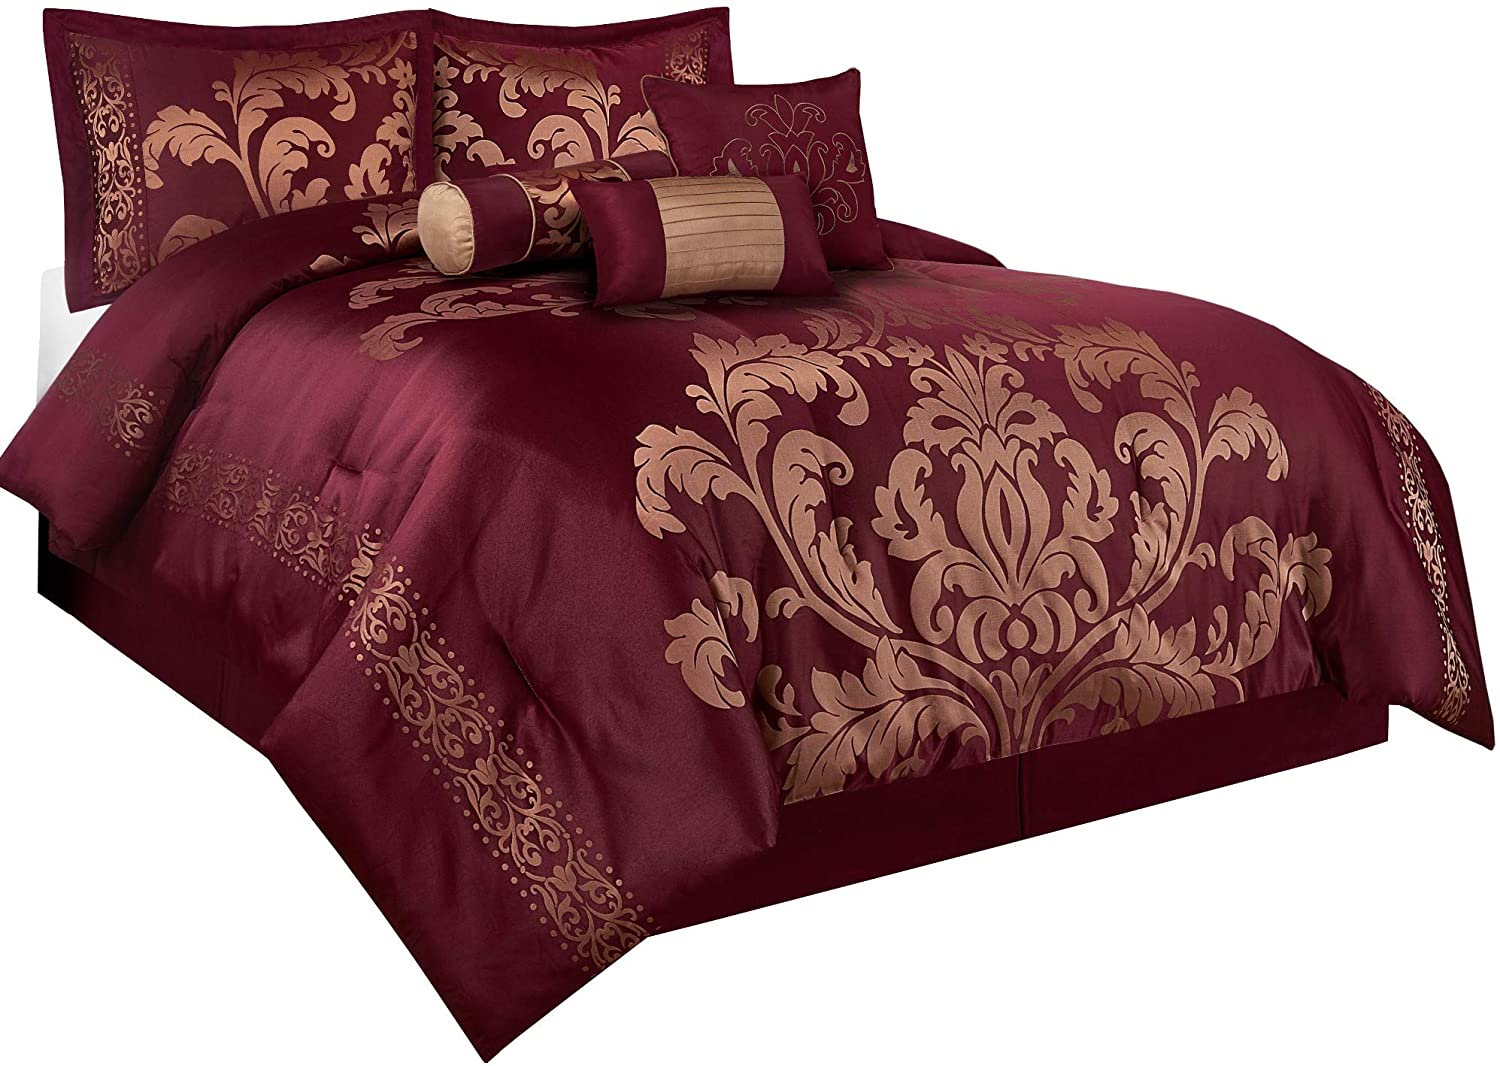 King Details about   Chezmoi Collection Lisbon 7-Piece Jacquard Floral Comforter Set Black/Gol 